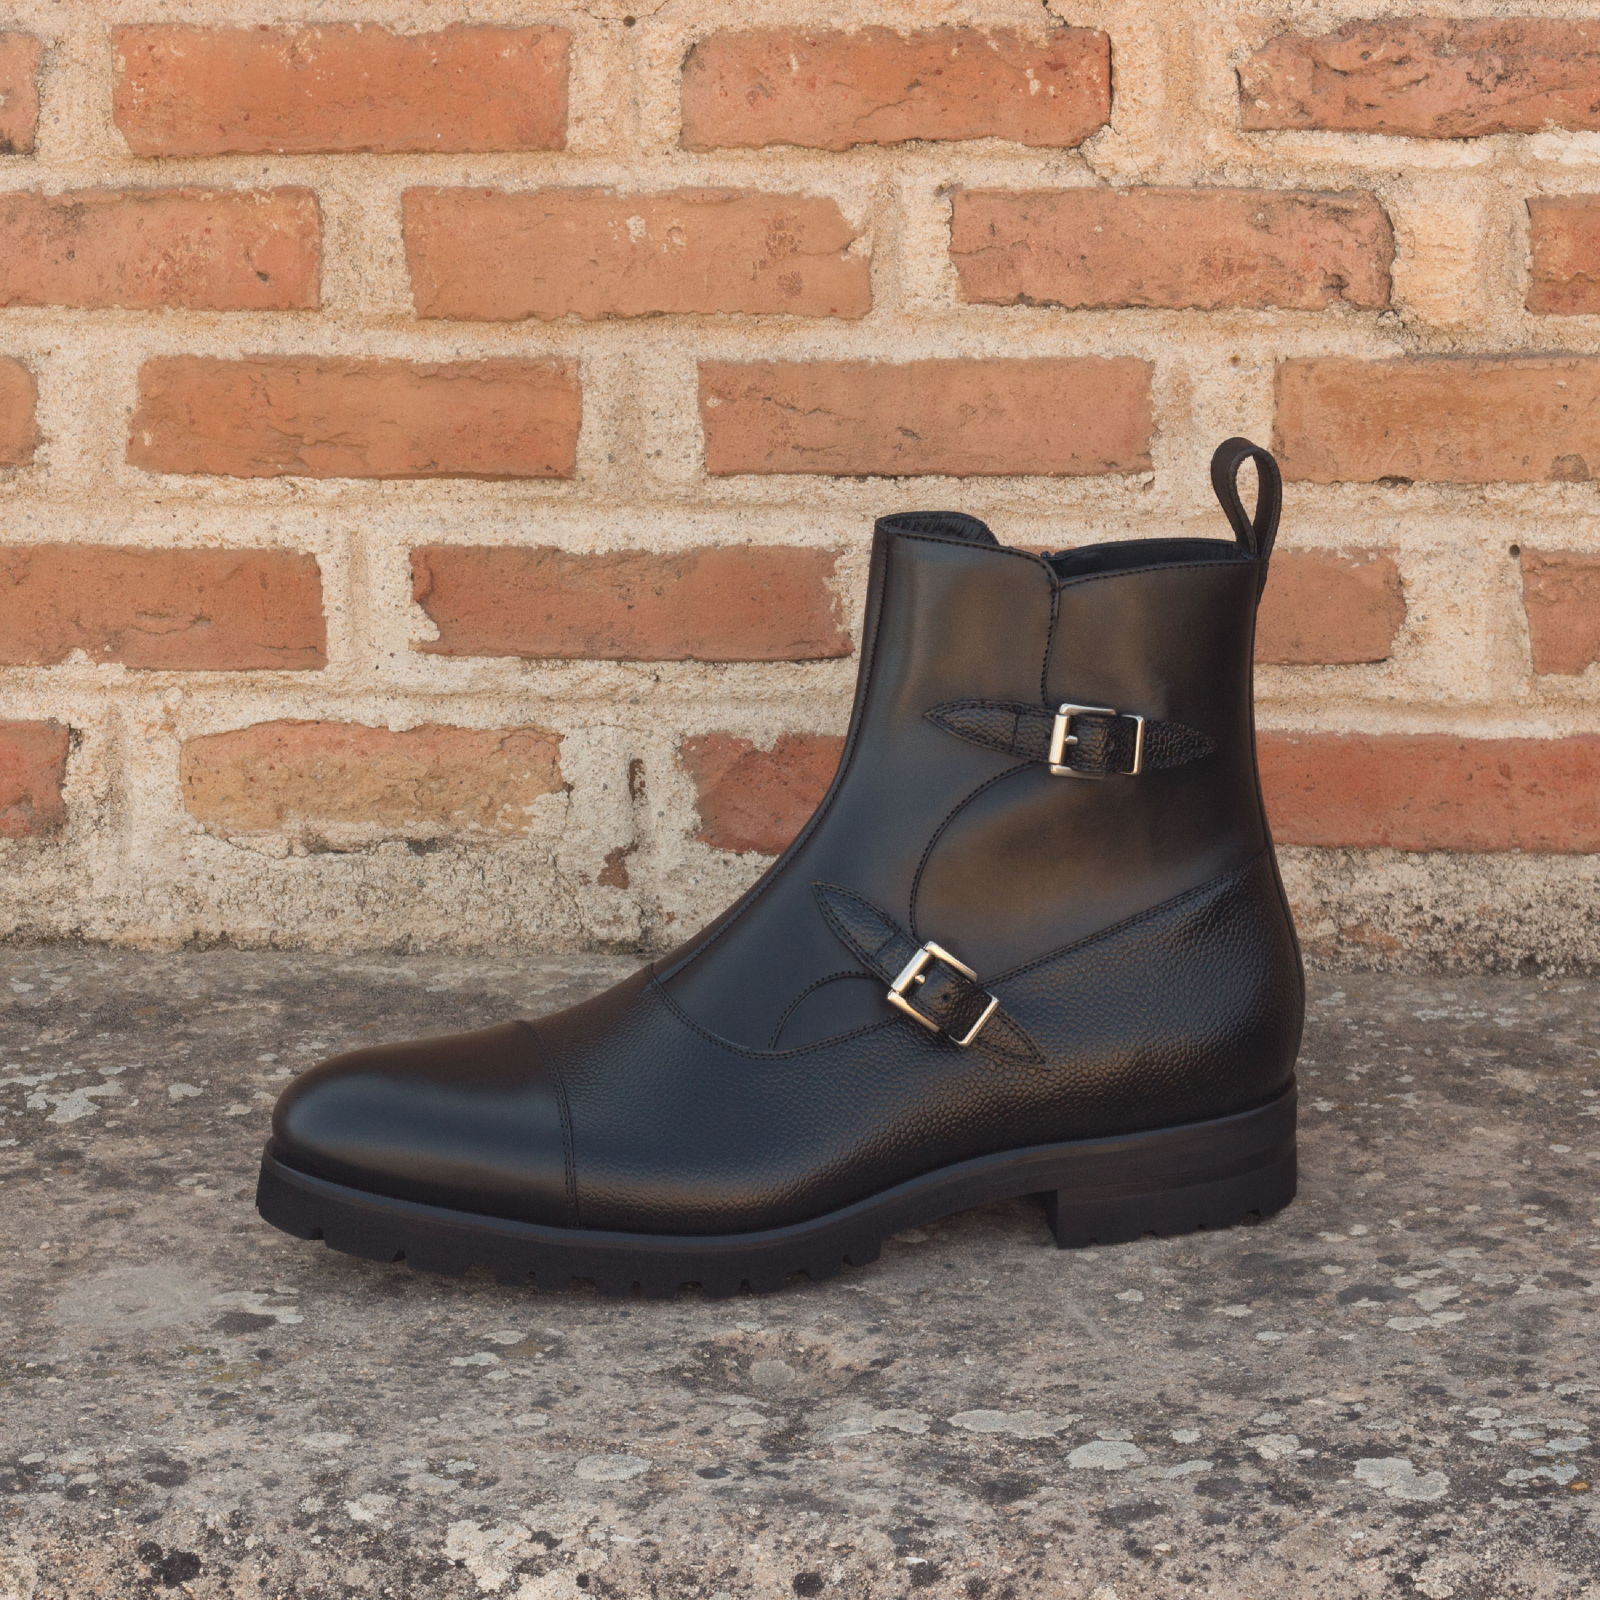 Men's Double Monk Boots in Black Pebble Grain and Italian Calf with Zipper - Maison de Kingsley Couture Harmonie et Fureur Spain